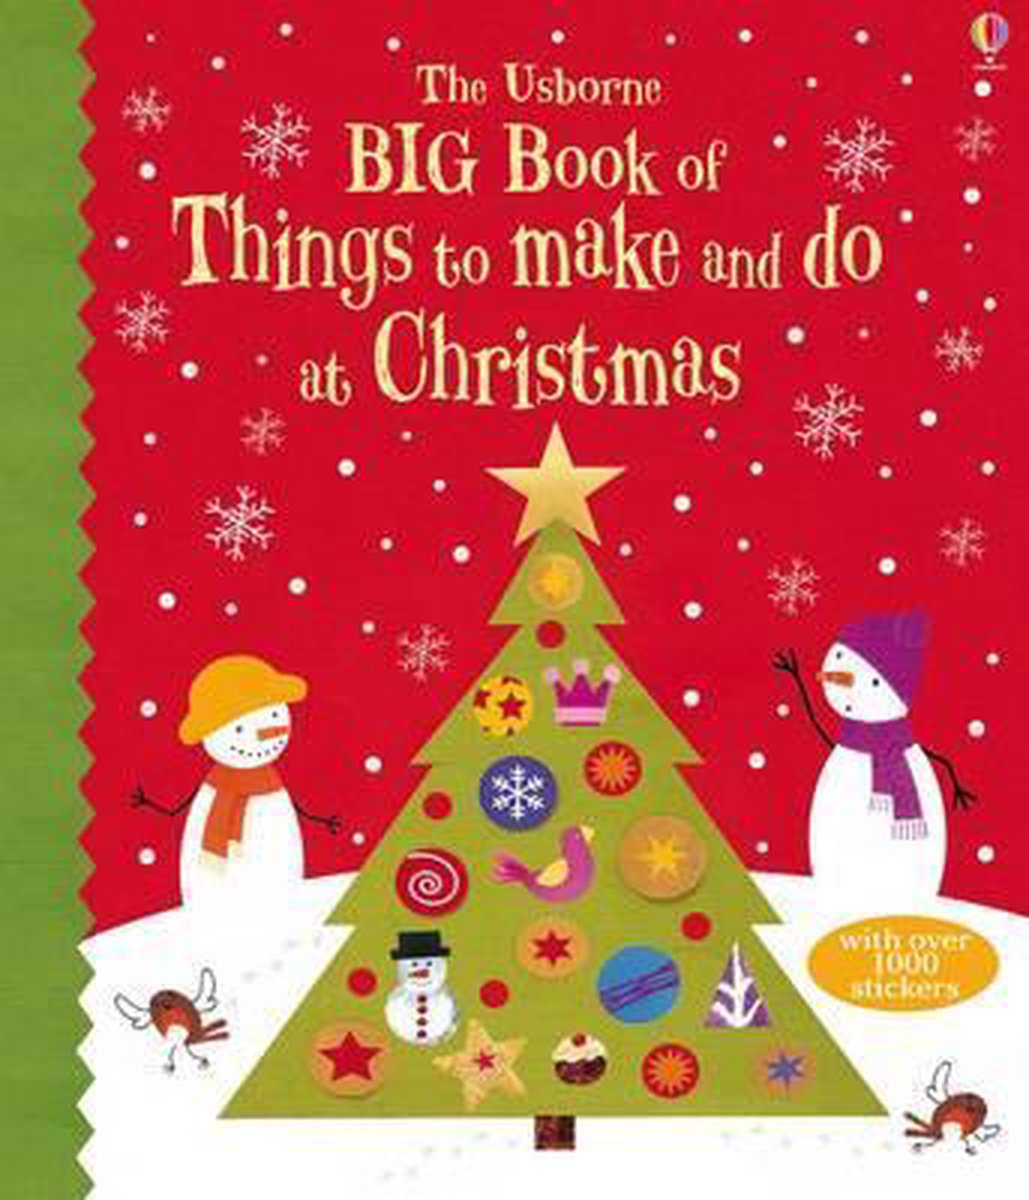 Big Book of Christmas Things to Make and Do